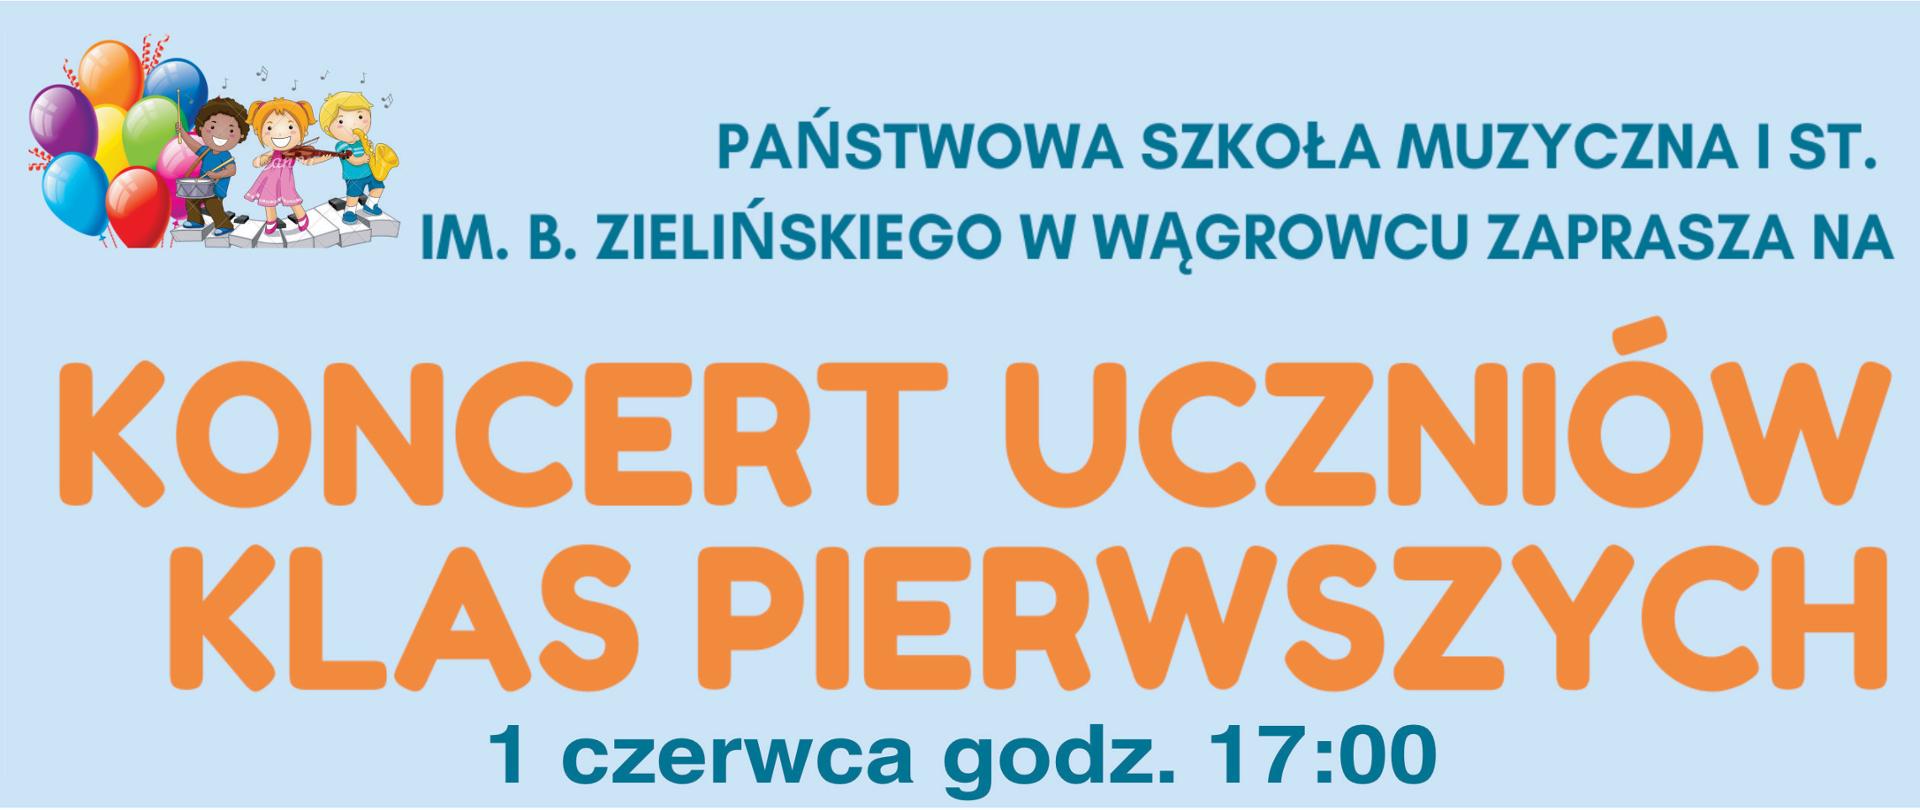 Plakat w tonacji jasnoniebieskiej z napisami na całej powierzchni koloru pomarańczowego informujący, że "Koncert uczniów klas pierwszych" odbędzie się 1 czerwca 2023r. o godz.17:00.